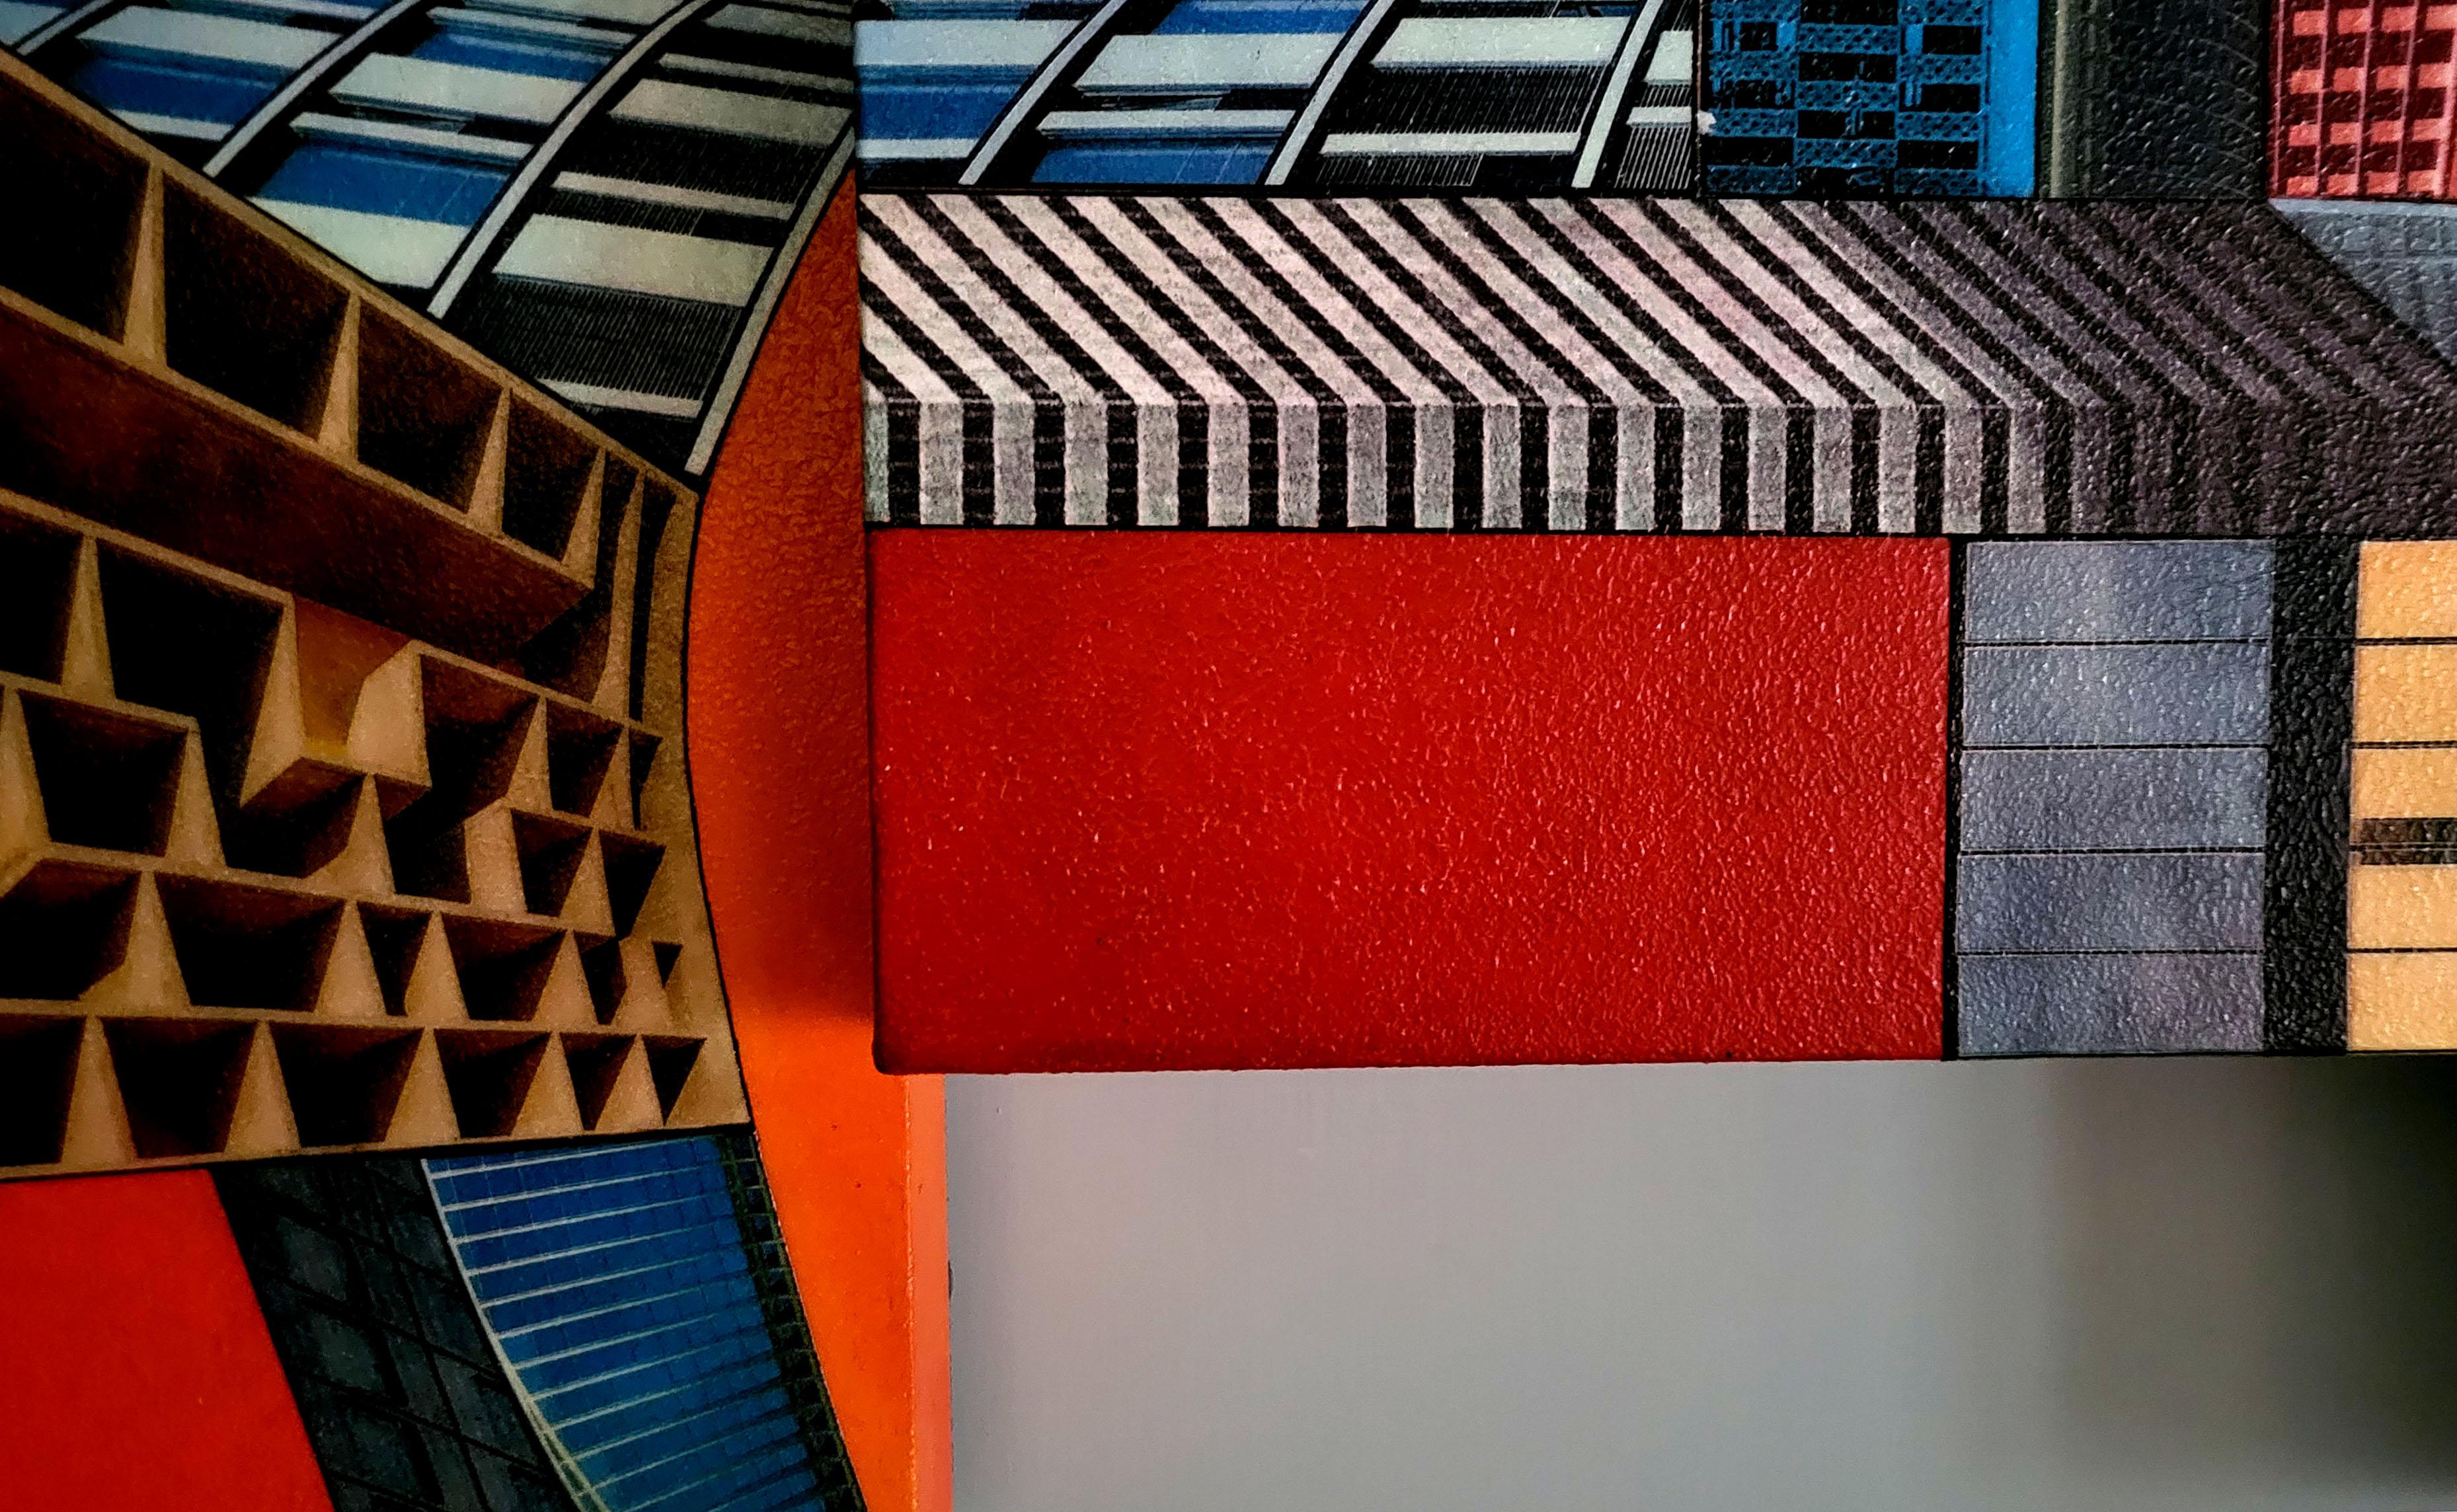 Cyberurban 3D (L3). Peinture constructiviste abstraite colorée futuriste
Peinture acrylique, techniques mixtes sur toile et panneau de bois. 2021
Dimensions en cm : 98 x 120 x 8 cm. 
En pouces : 38.58